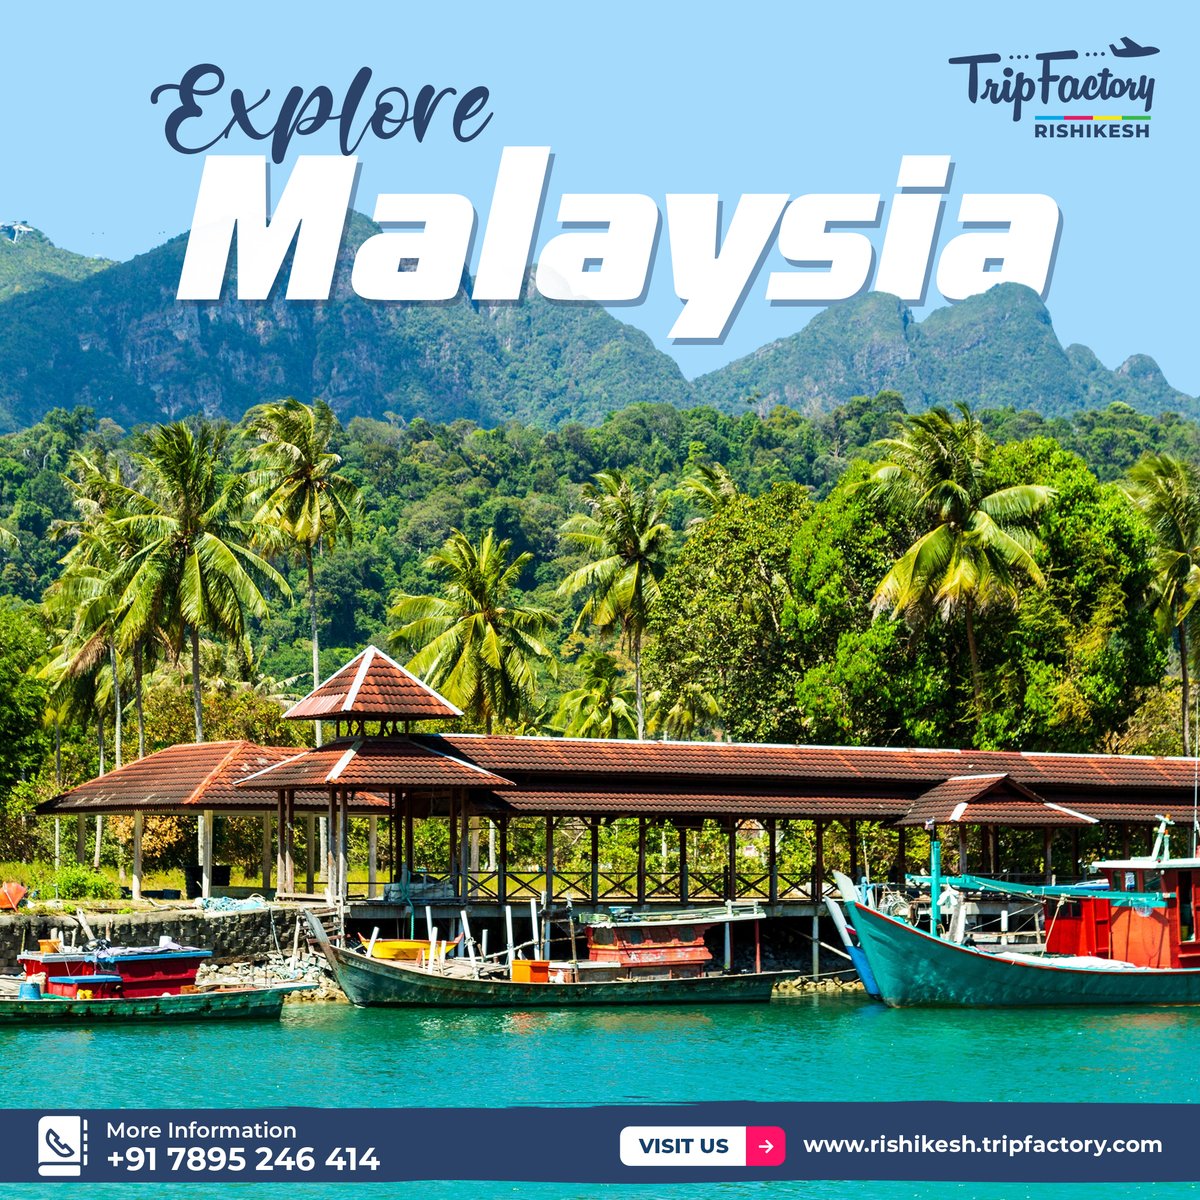 Explore Malaysia!

call for more: 7895246414

#visitmalaysia #malaysia #malaysiatrulyasia #kualalumpur #travel #tourismmalaysia #exploremalaysia #travelmalaysia #malaysiatourism #penang #sabah #kelantan #wanderlust #langkawi #malaysian #malaysiatravel #klia #damansara